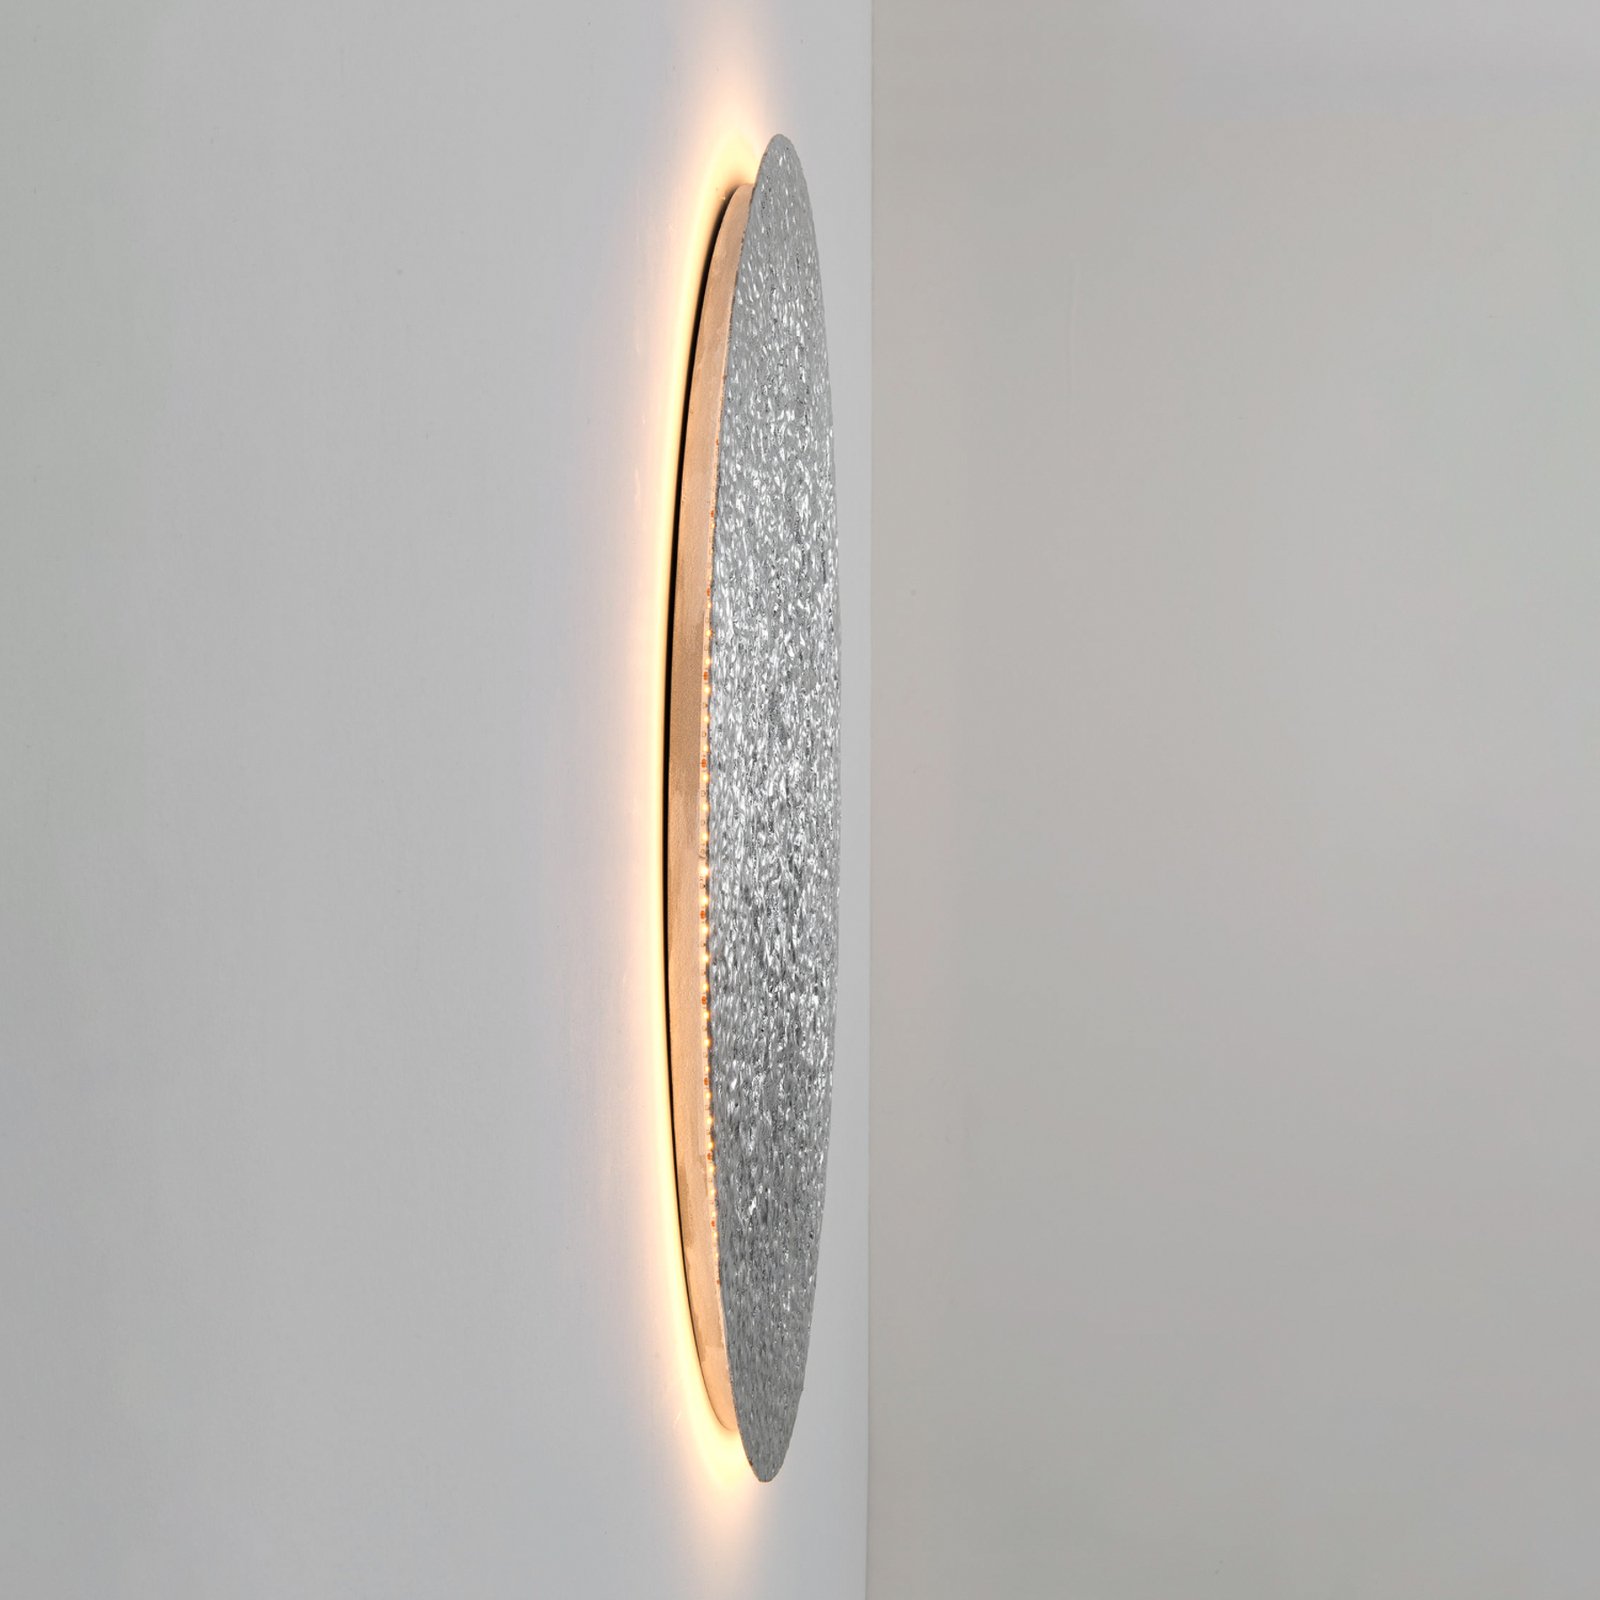 LED-seinävalaisin Meteor, hopeanvärinen, Ø 100 cm, rautaa